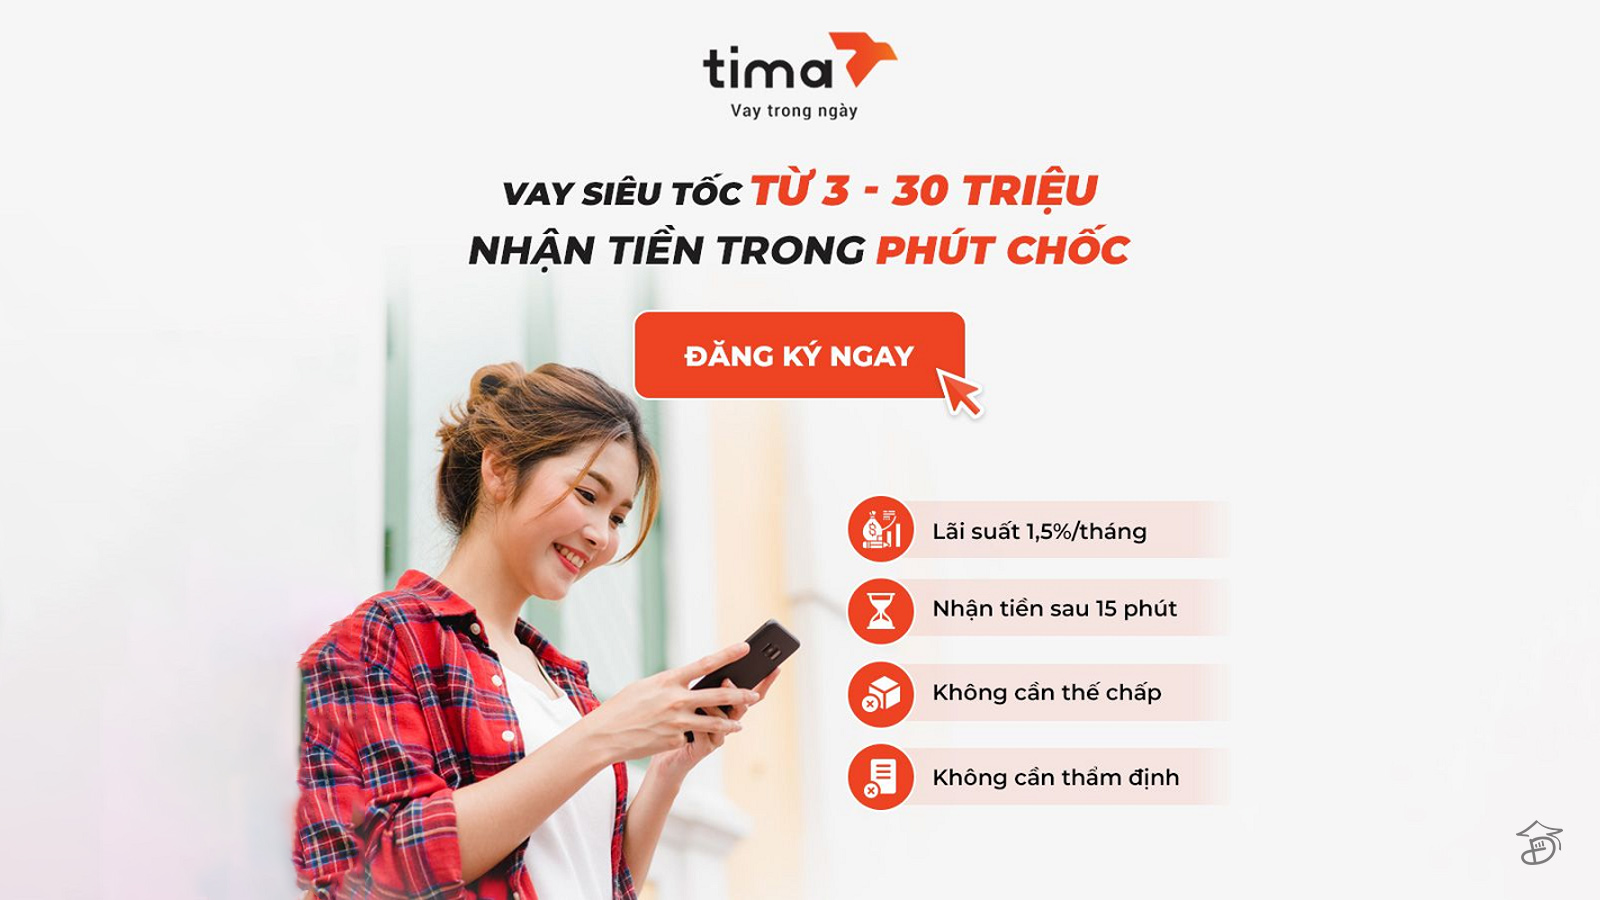 Hướng dẫn cách vay tiền Tima